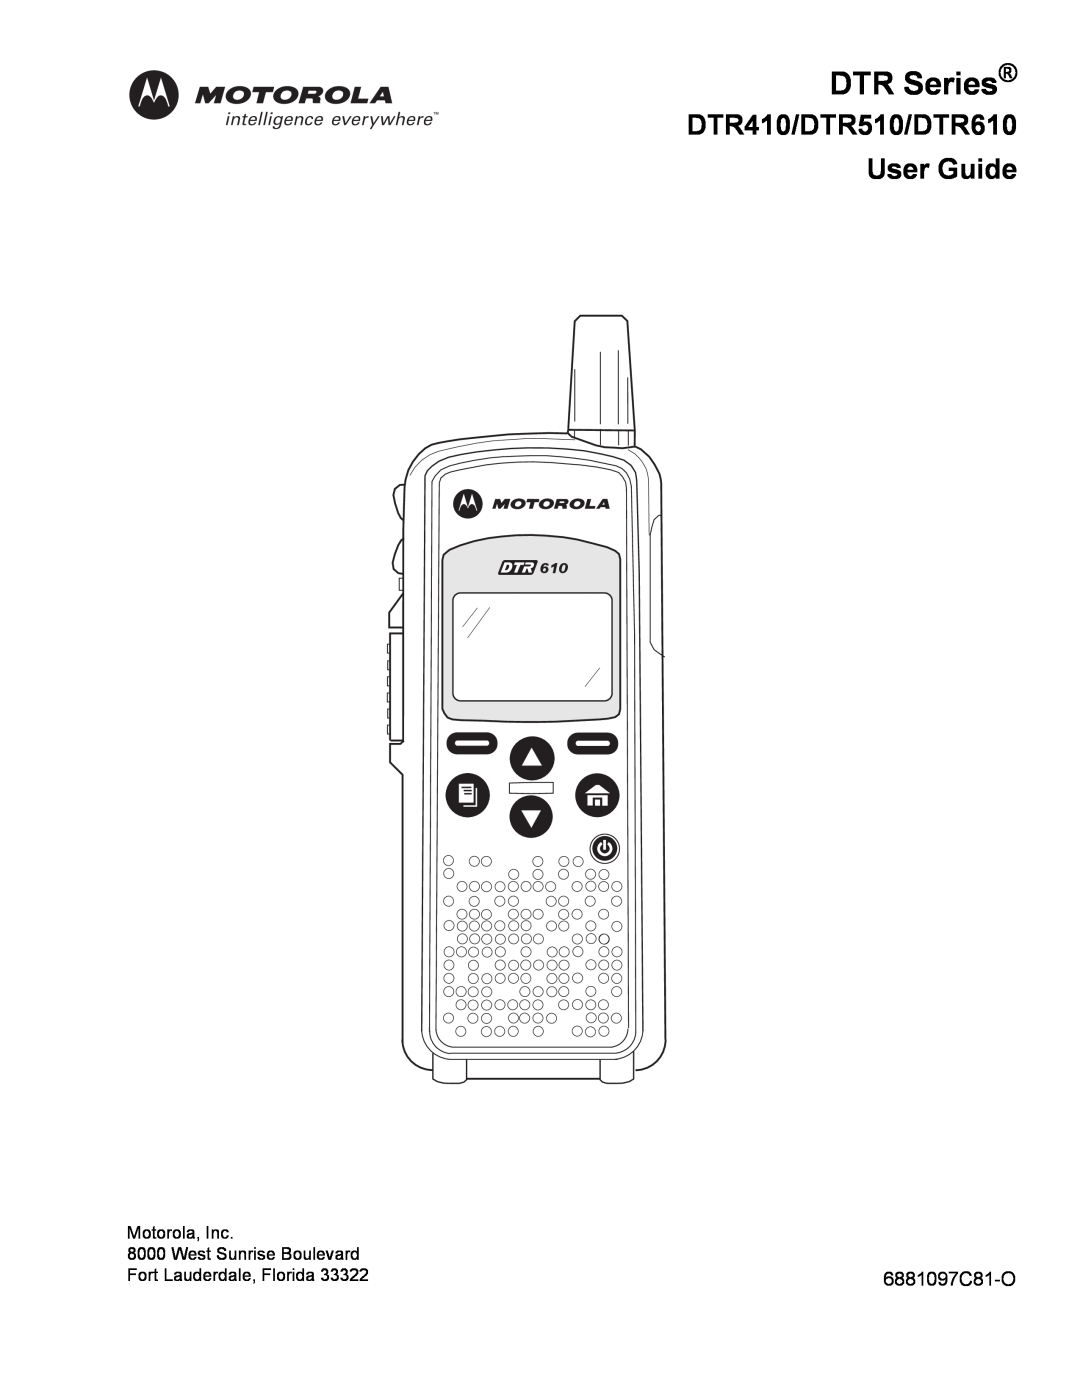 Motorola manual DTR Series, DTR410/DTR510/DTR610 User Guide, 6881097C81-O 